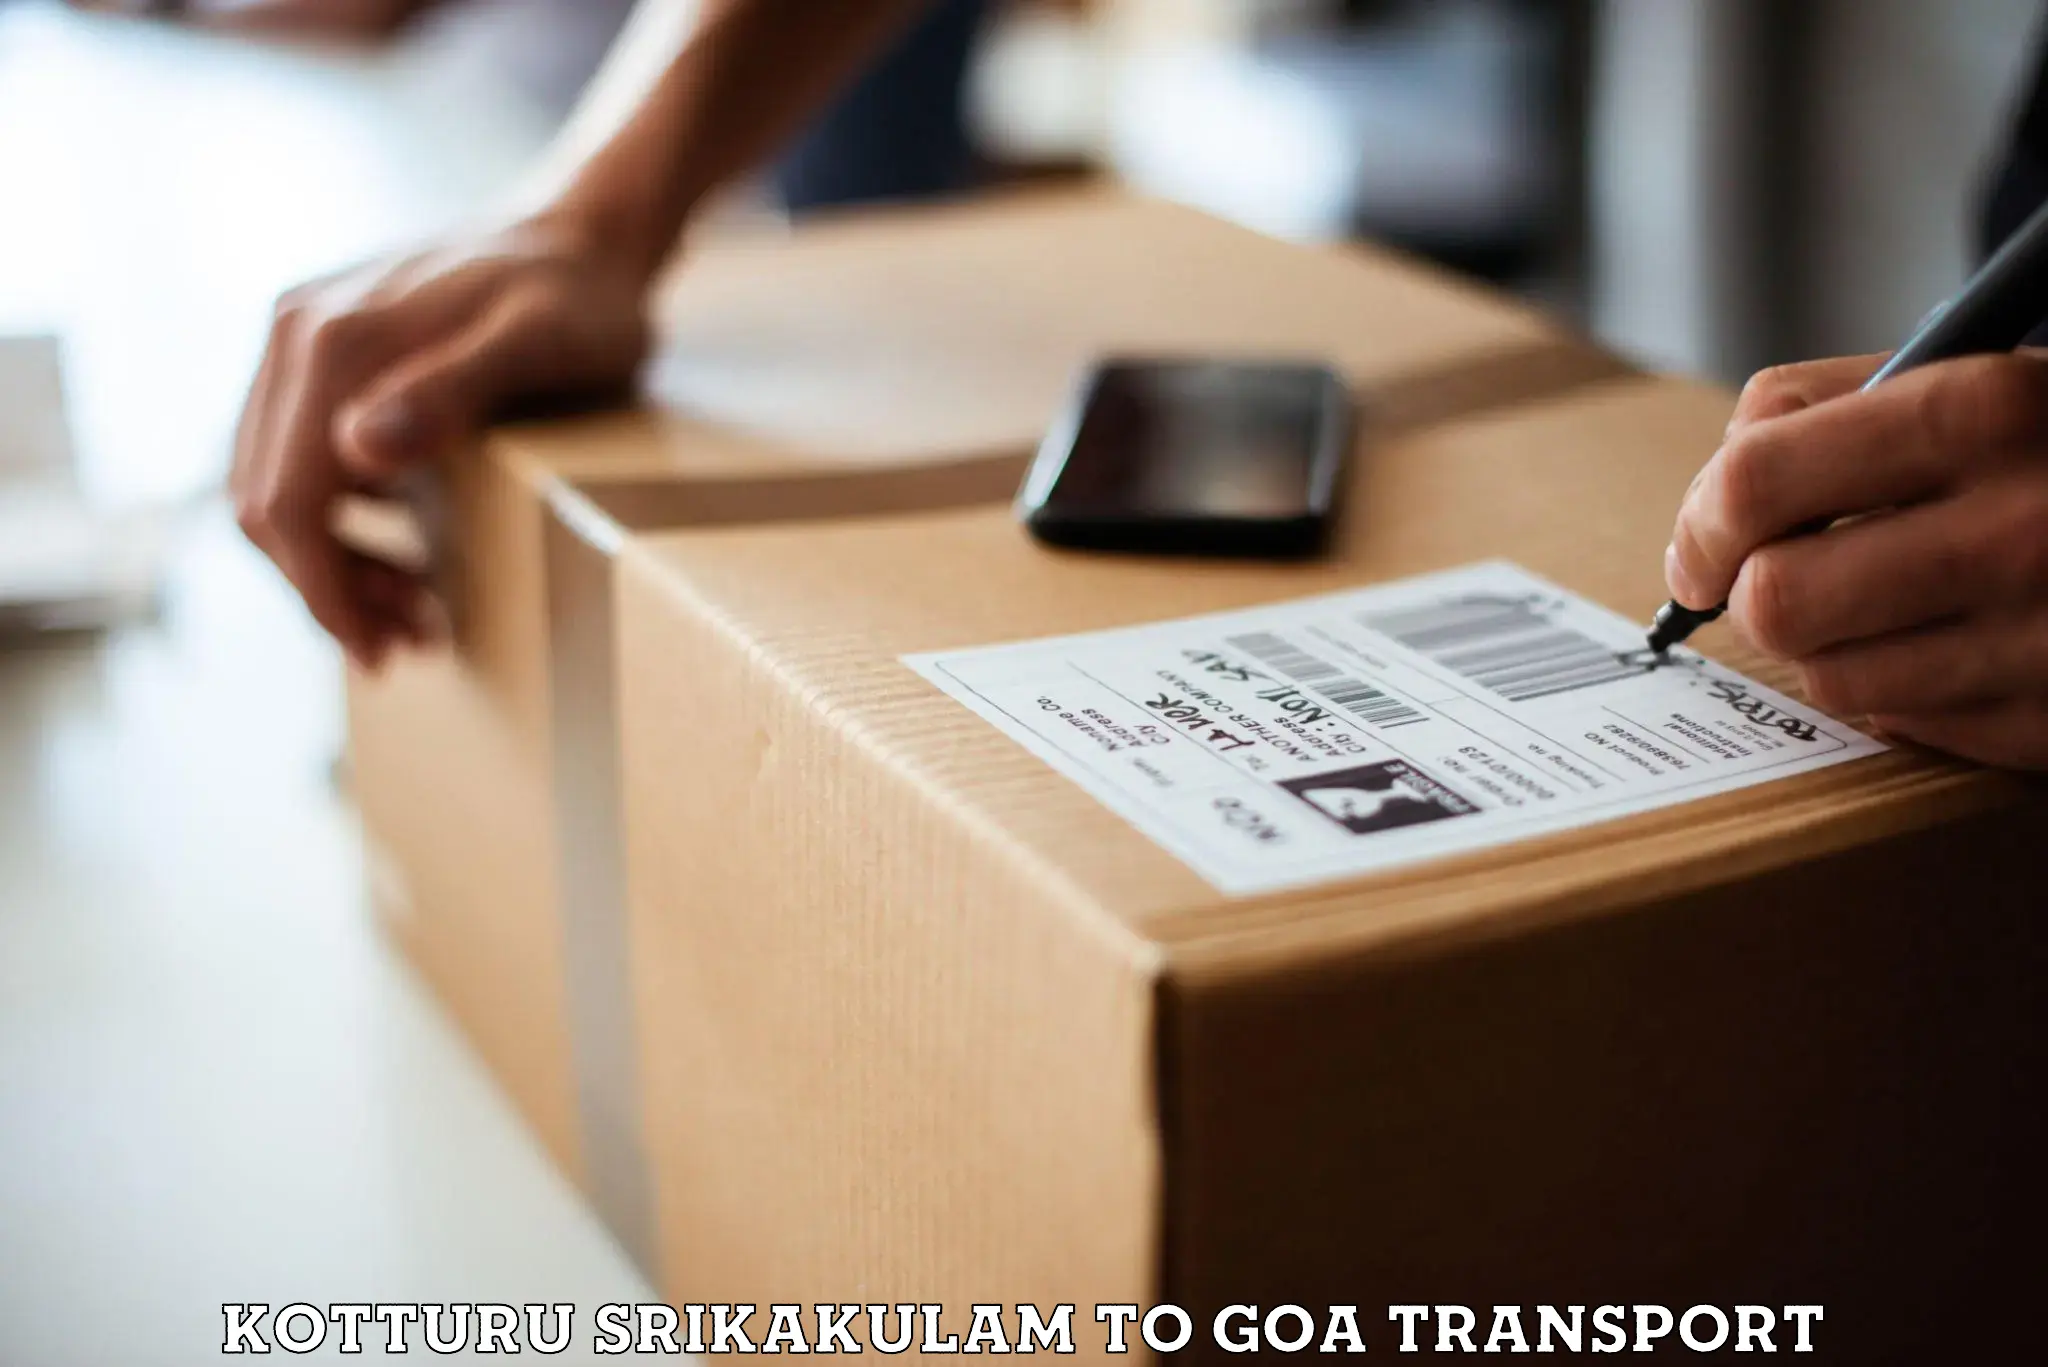 Road transport services Kotturu Srikakulam to IIT Goa